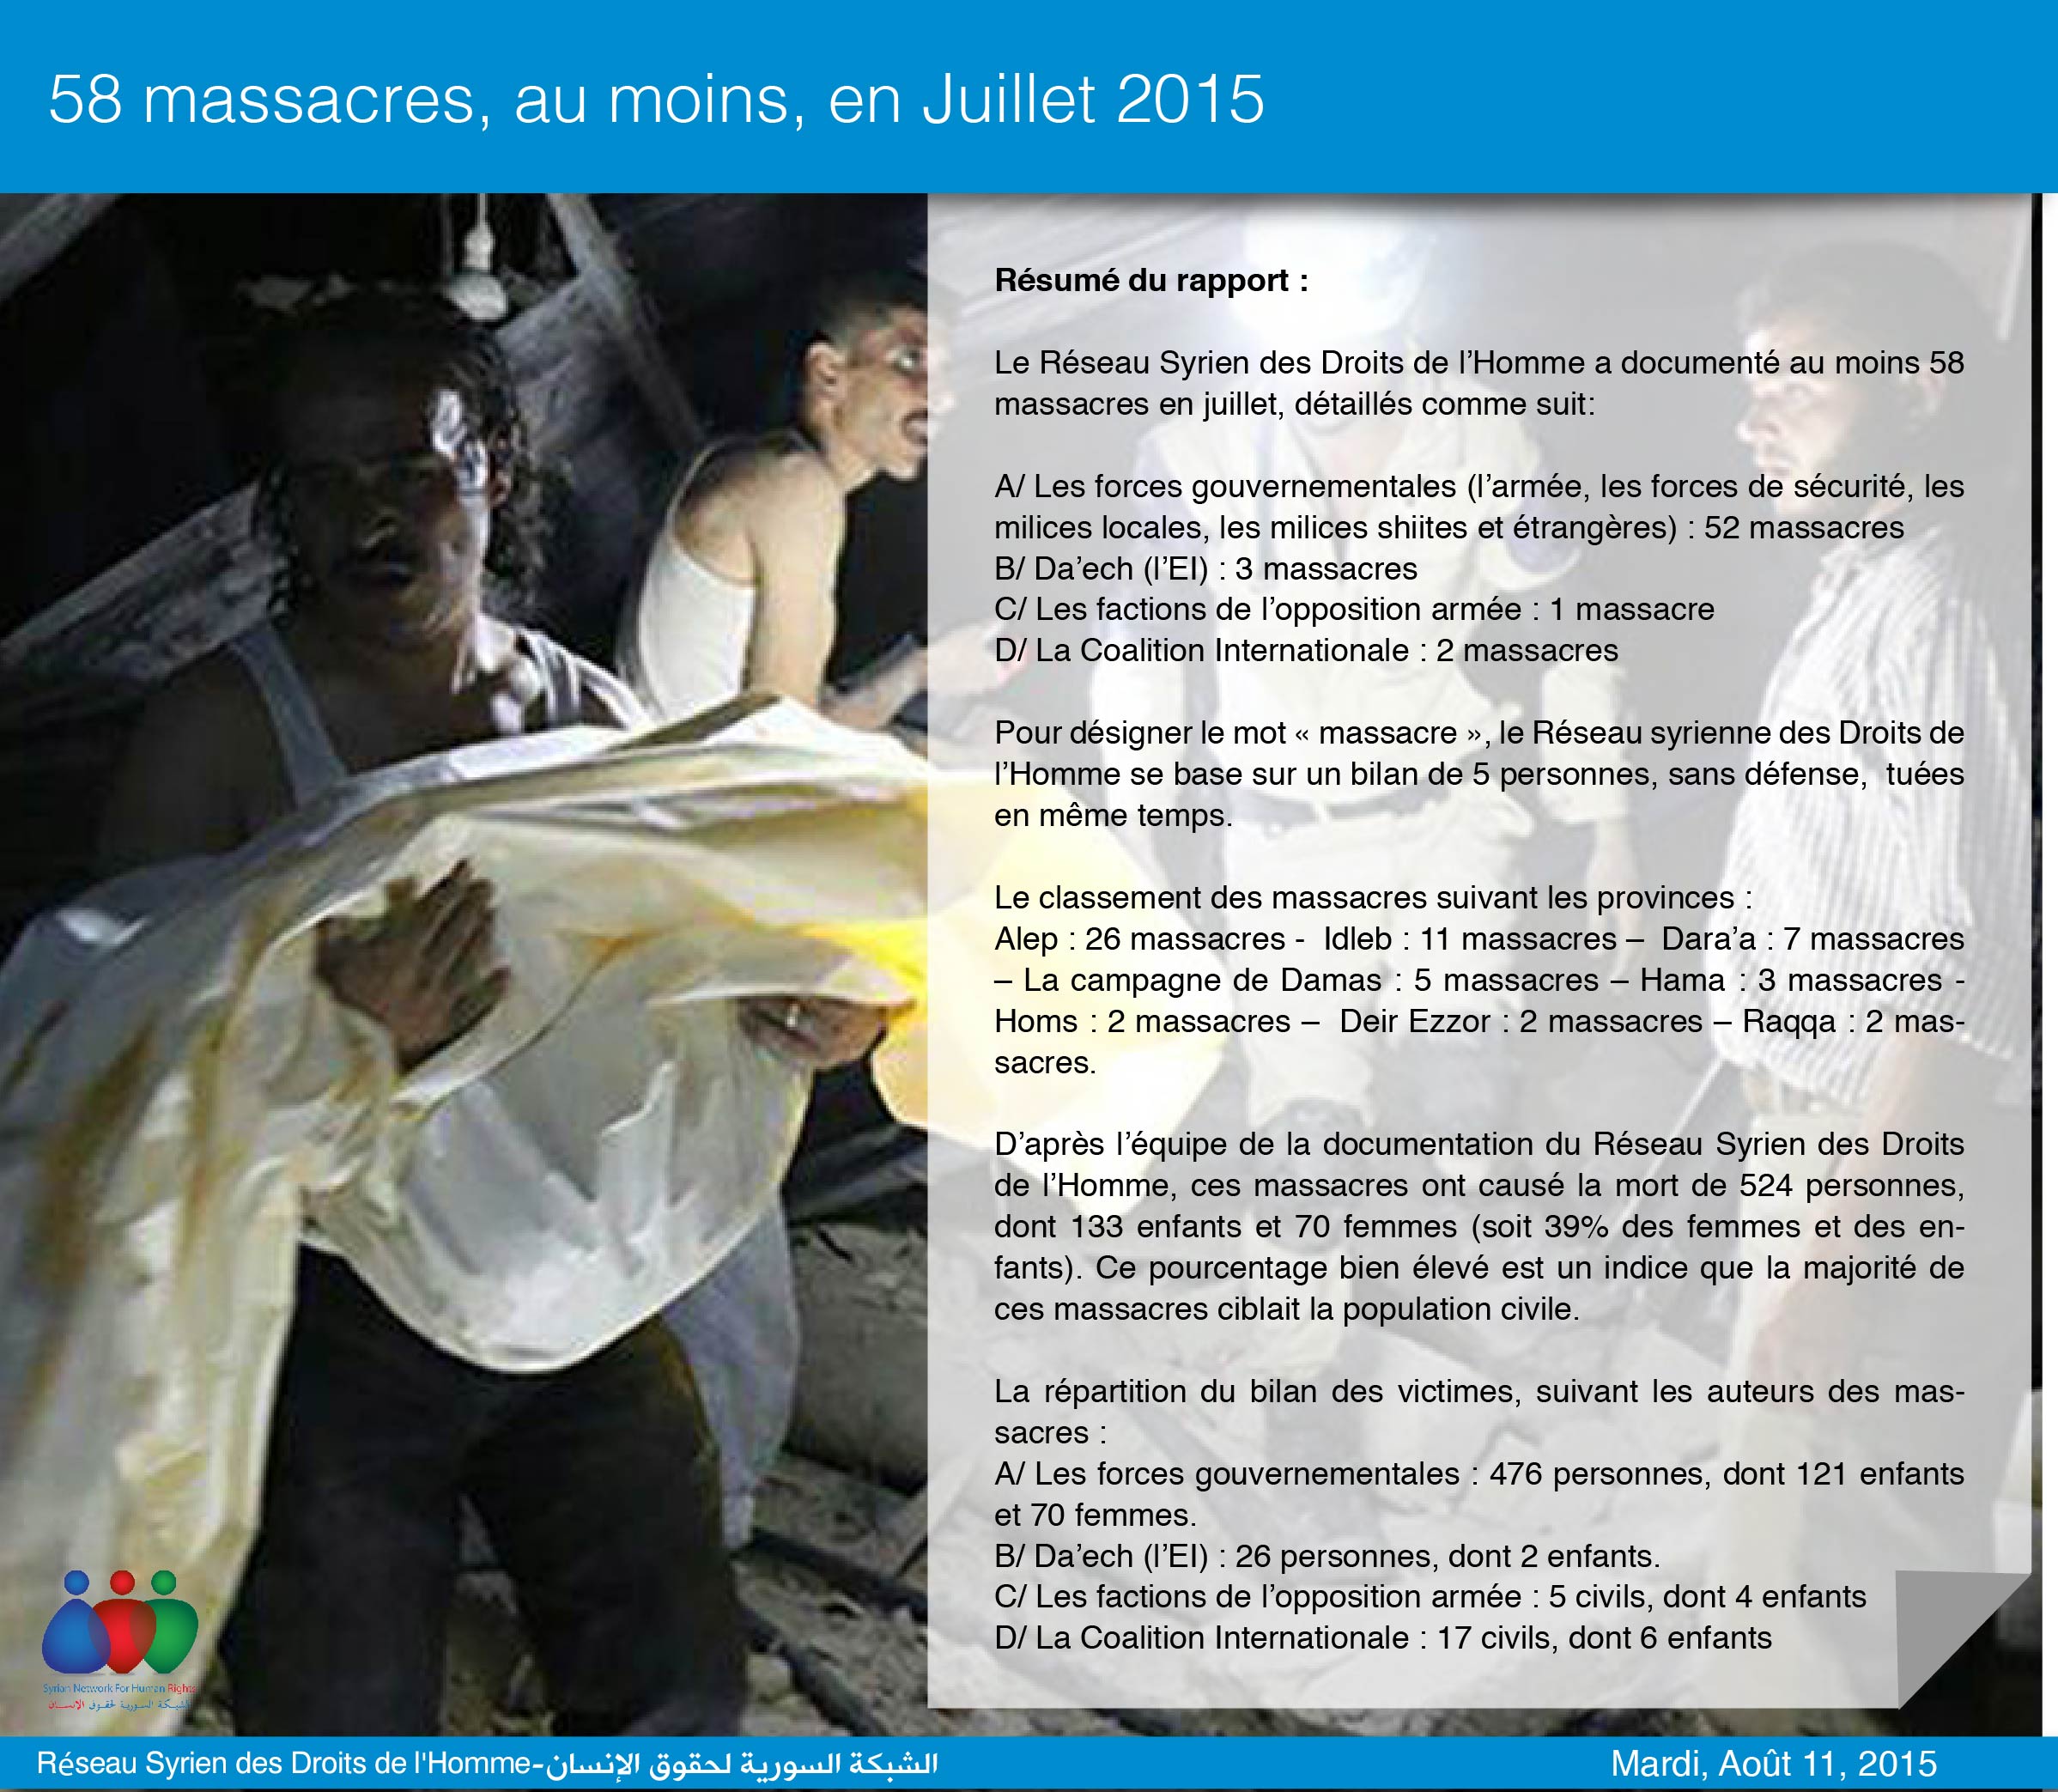 58 massacres, au moins, en Juillet 2015